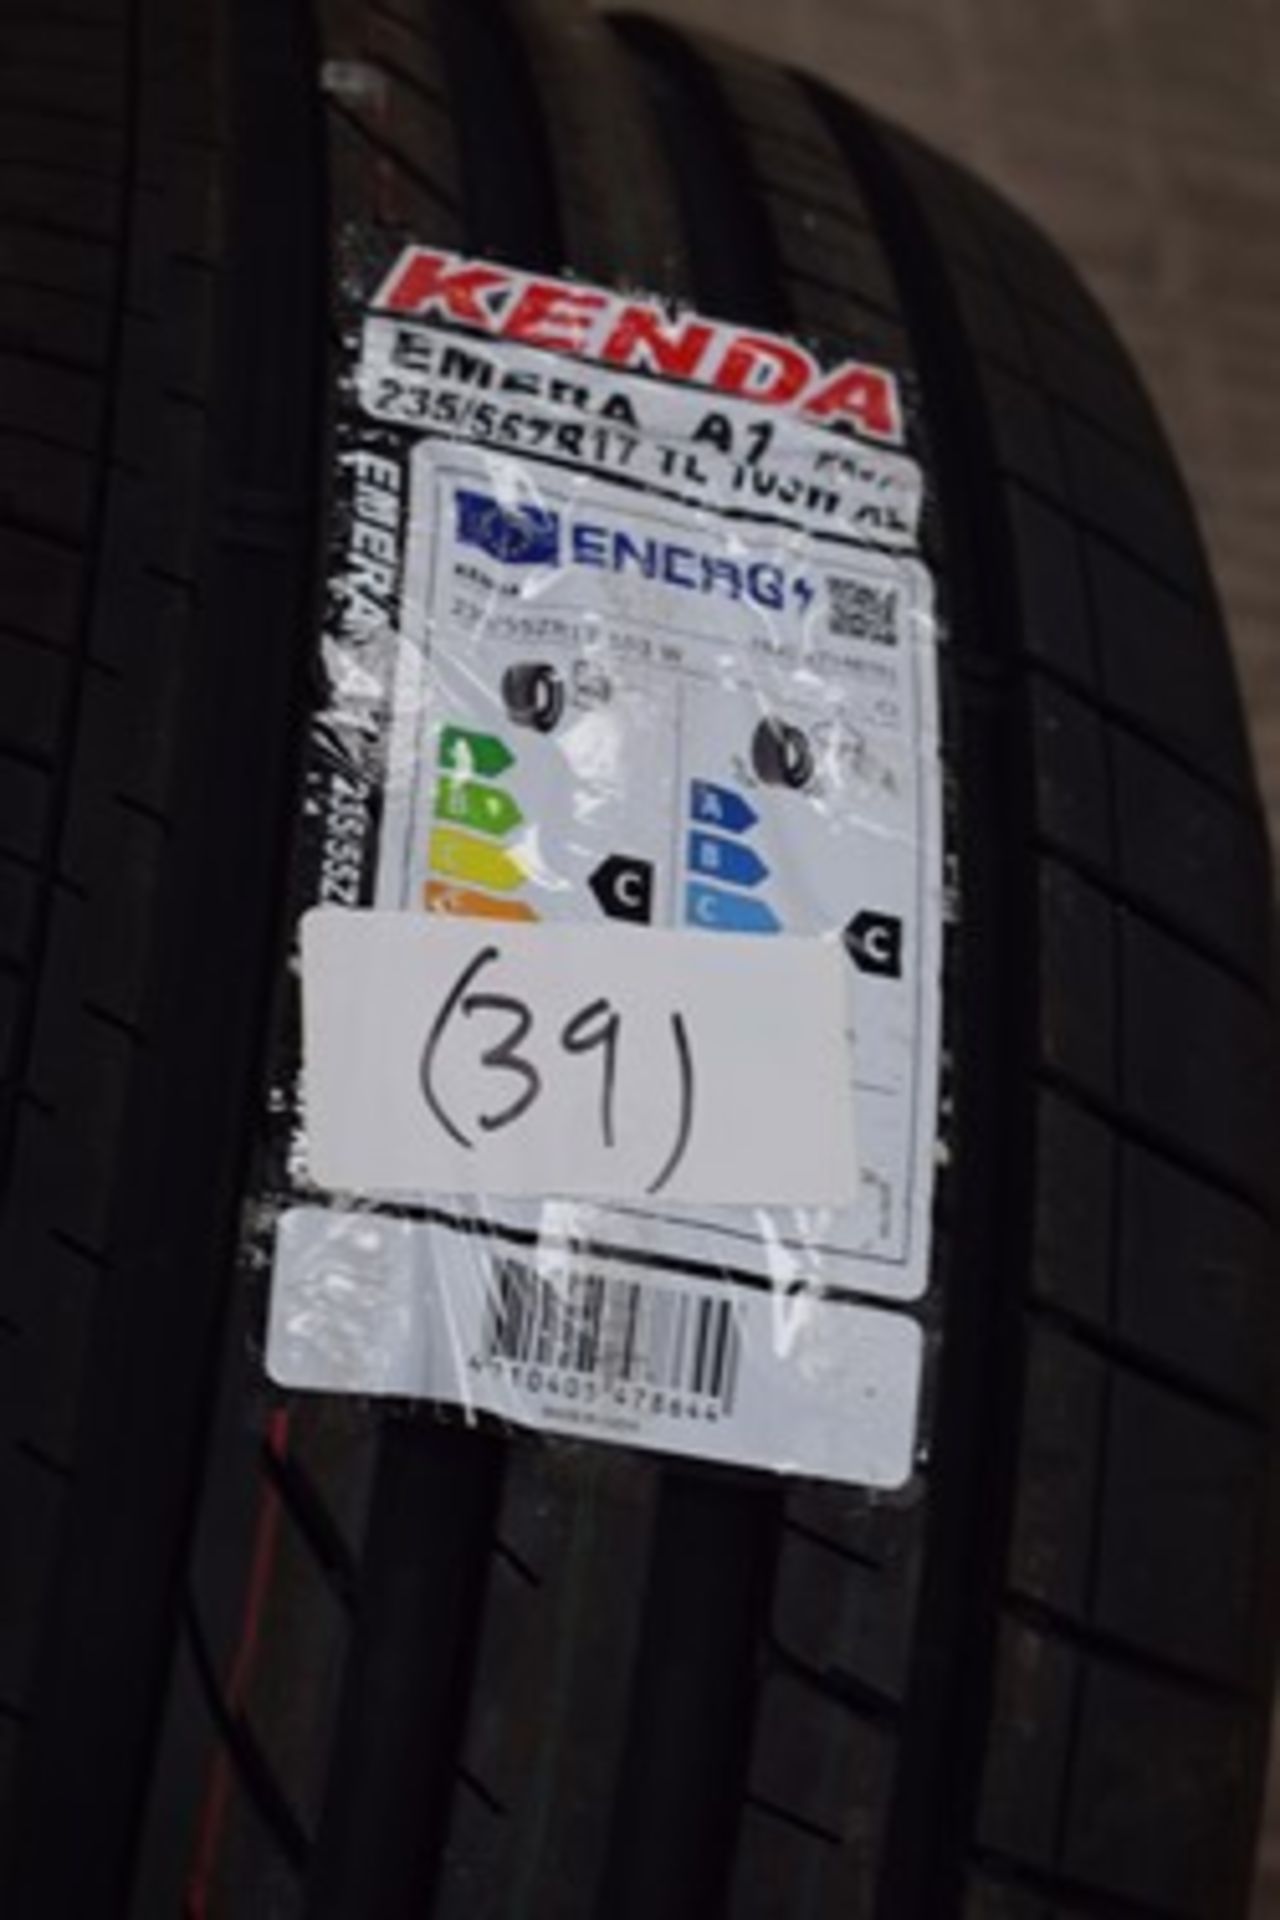 1 x Kenda Emera A1 KR41 tyre, size 235/55ZR17 103W XL TL - new with label (C3)(39)